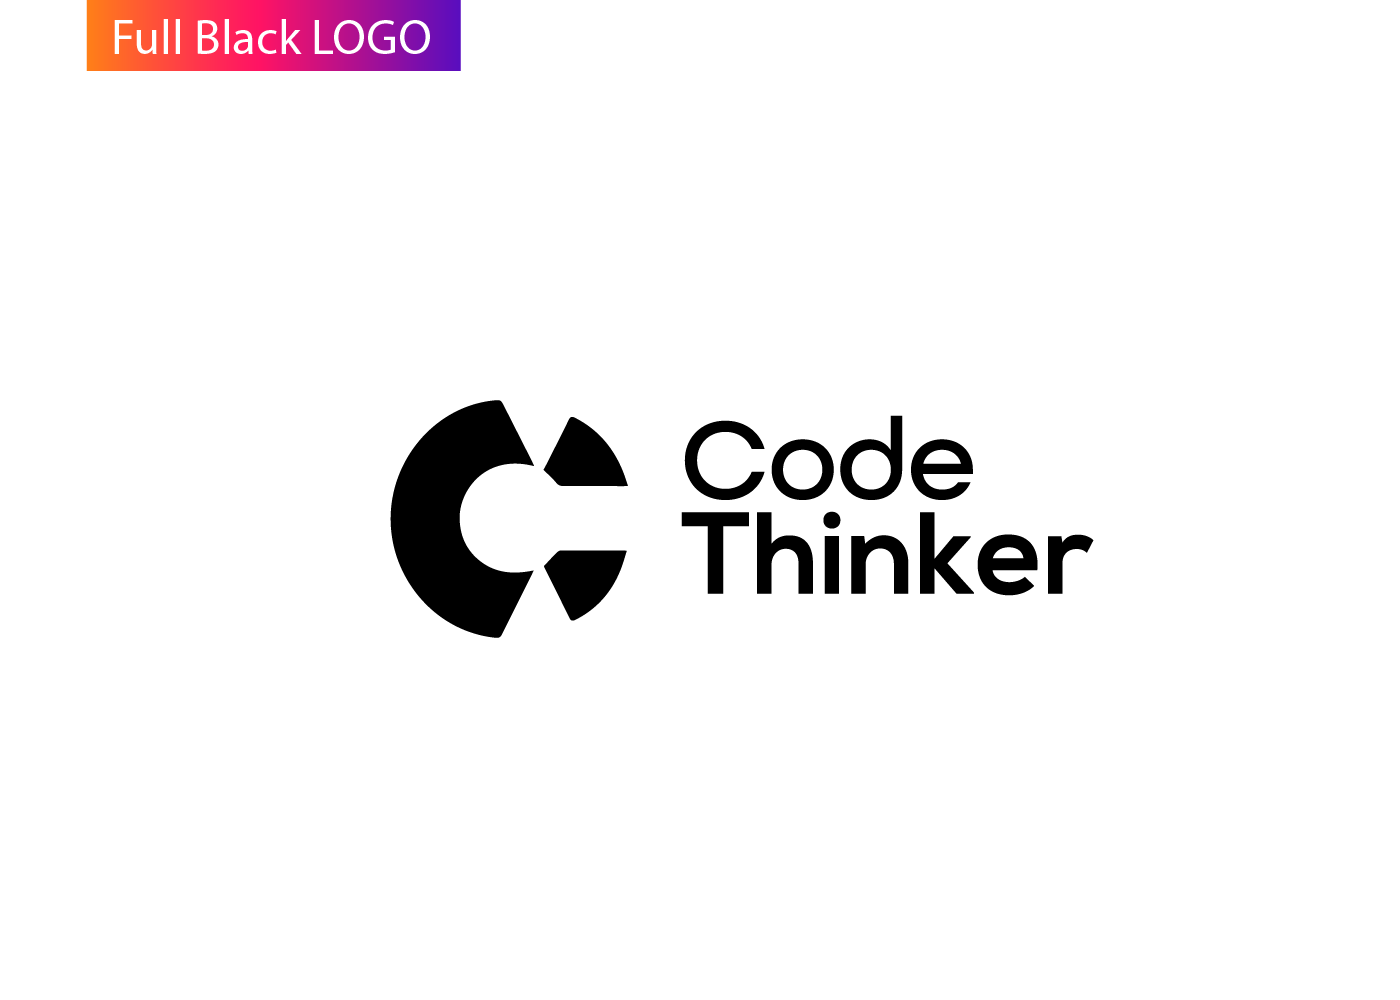 logo brand identity Coding Logo agency Modern Logo rebranding logodesigner #C #mdkhokonislam minimslist logo